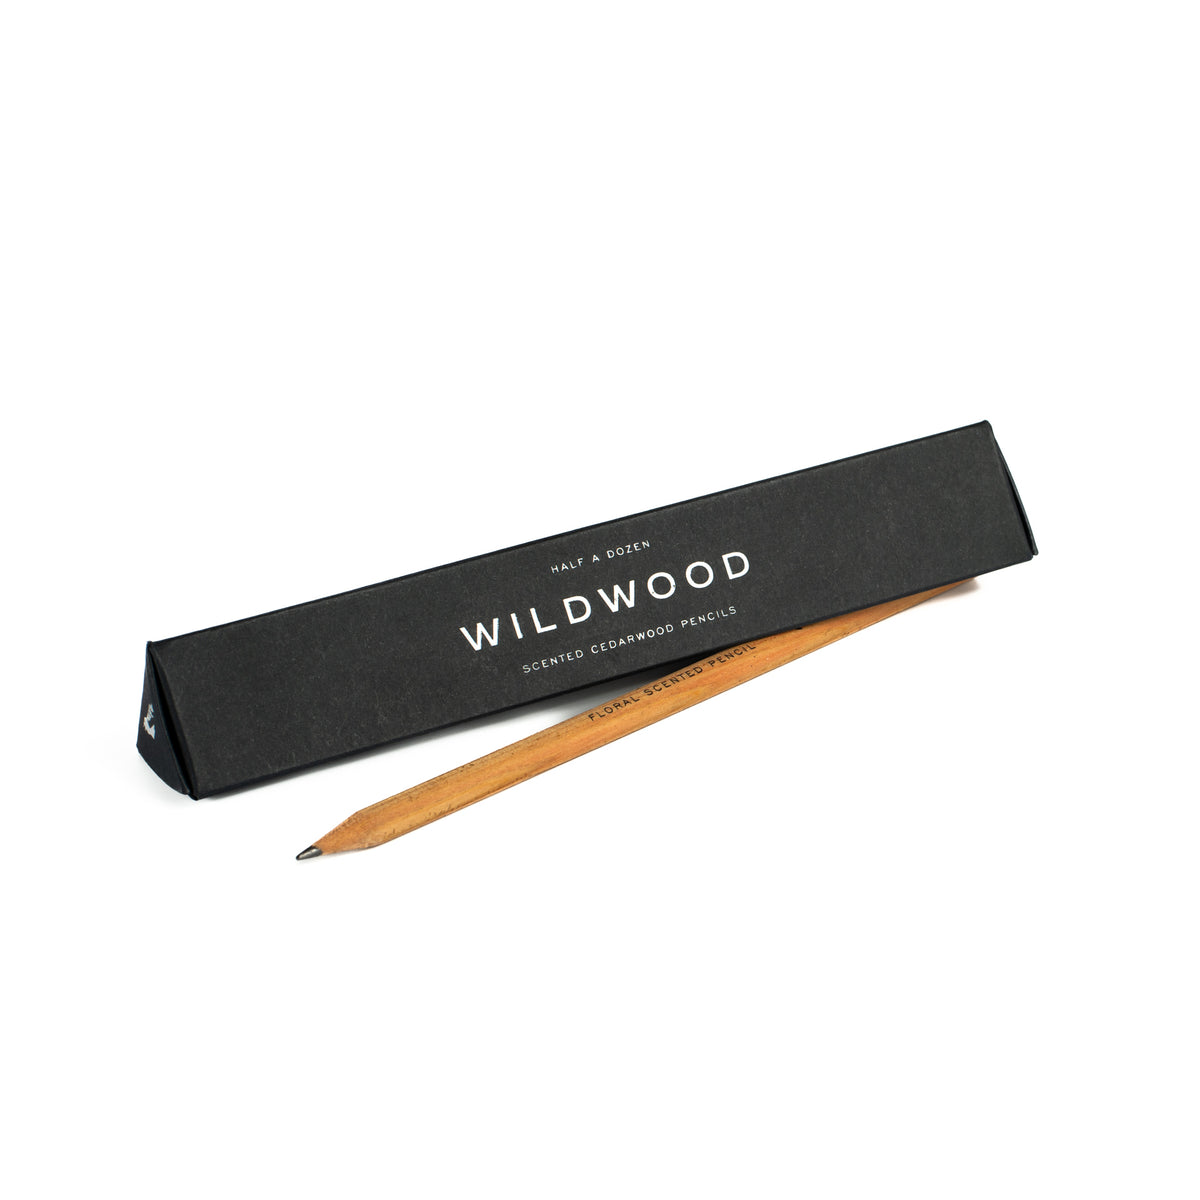 Wildwood scented pencils